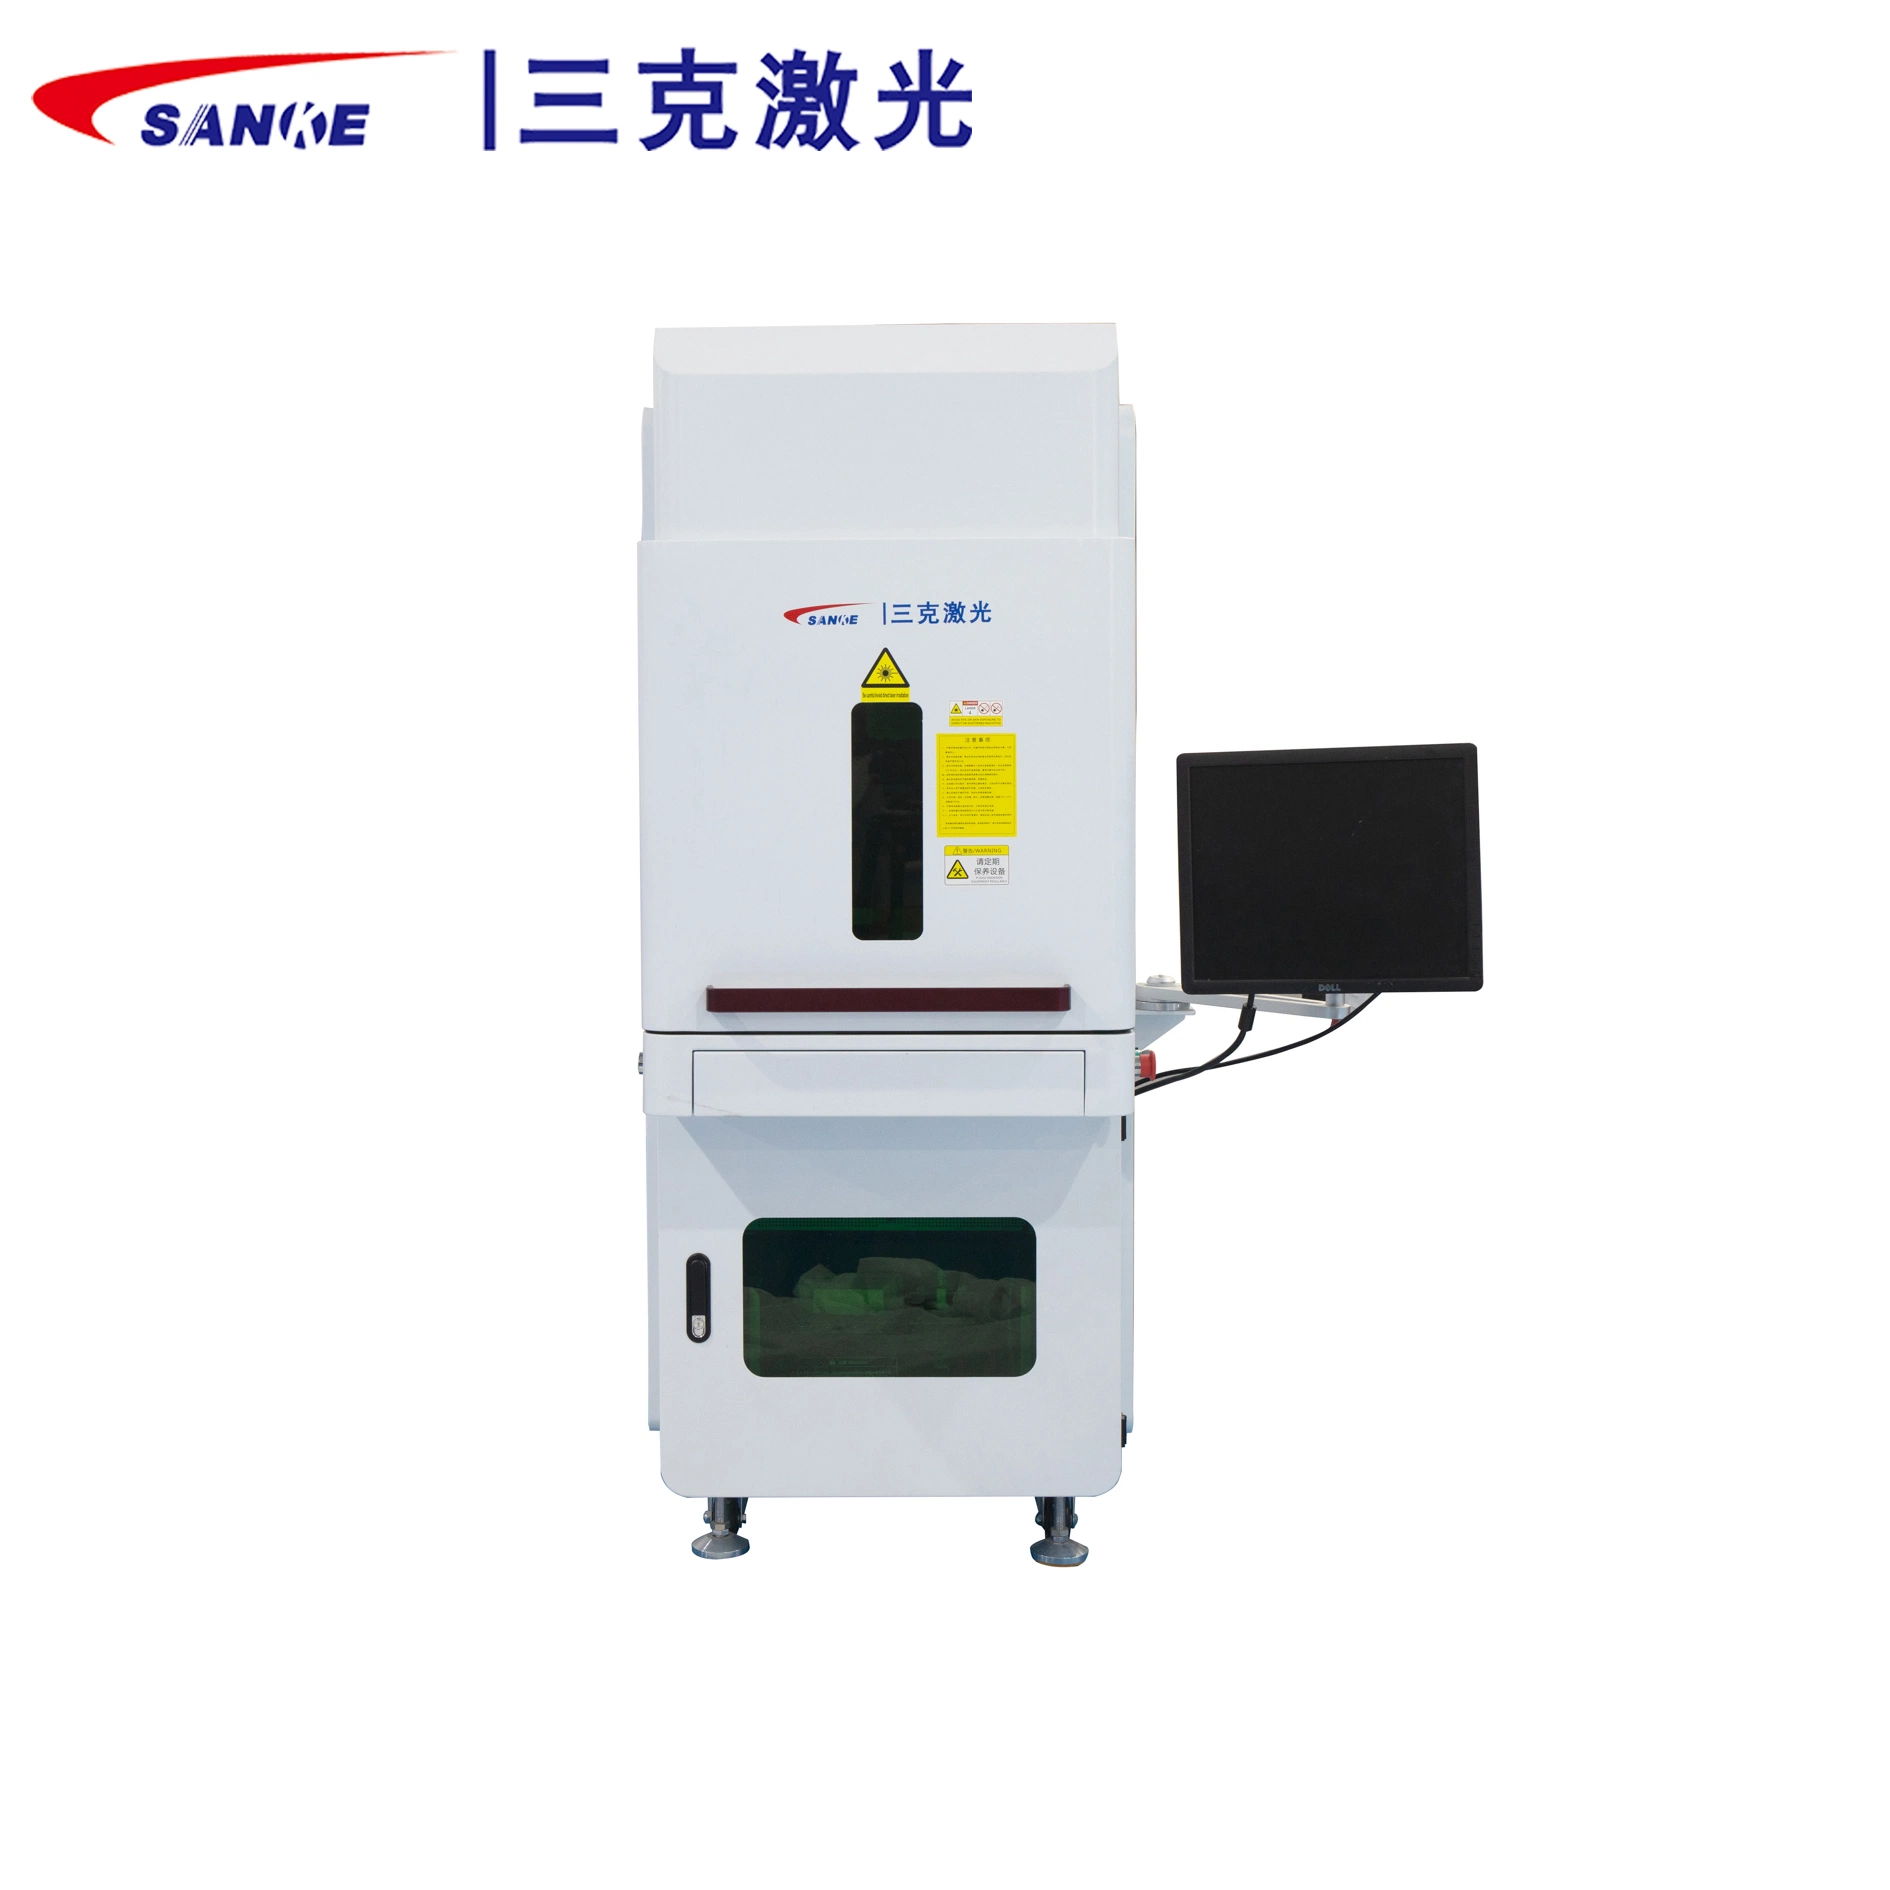 10W UV Laser Marking Machine